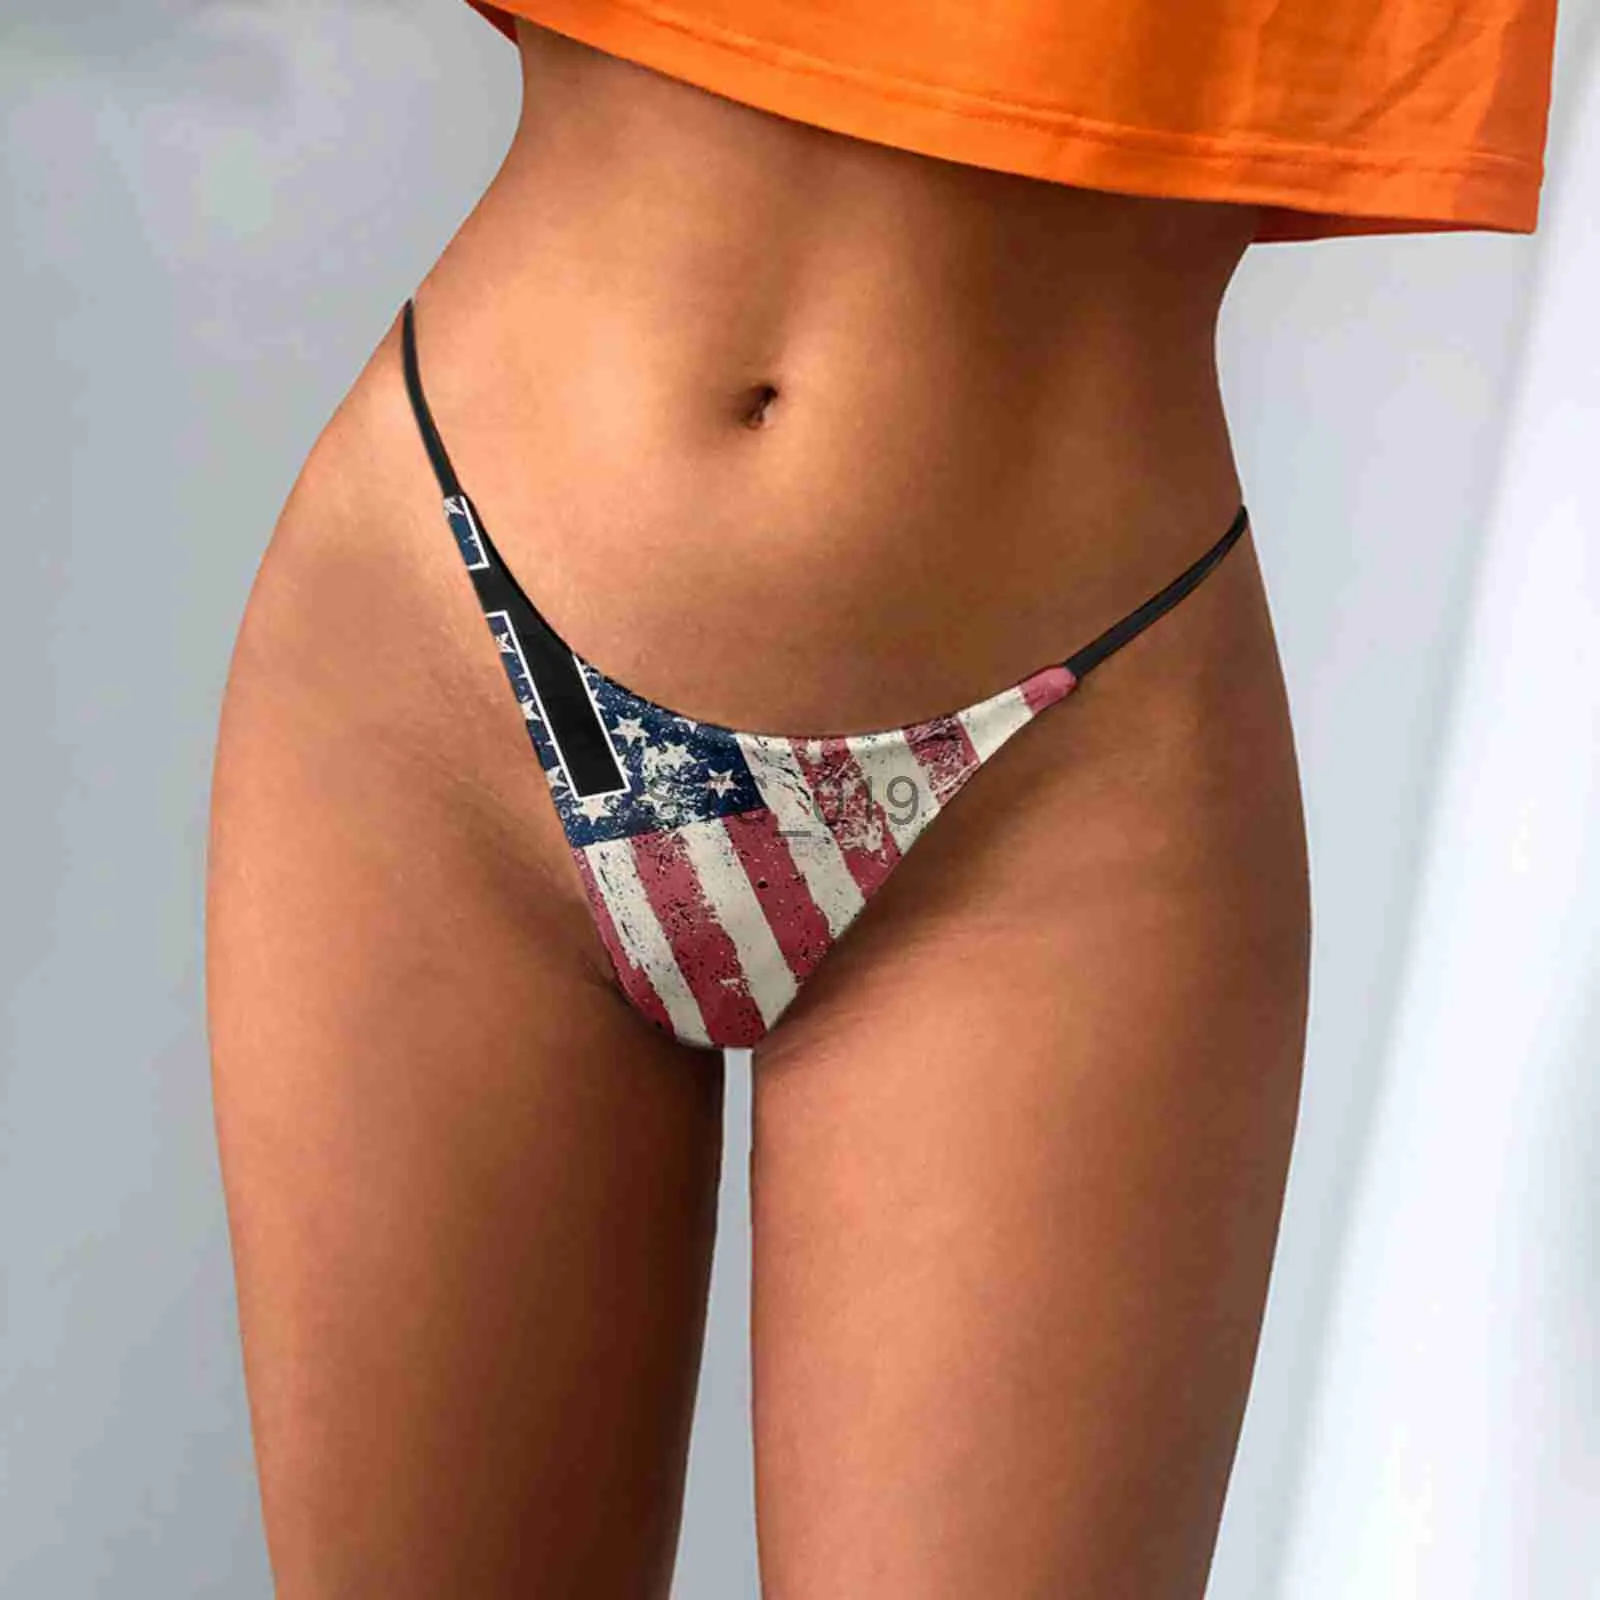 Slips Höschen USA Flagge Gedruckt Frauen Bikini Tangas Slips Für Unabhängigkeitstag Party Sexy G-strings Niedrige Taille Höschen Unterwäsche dessous x0625